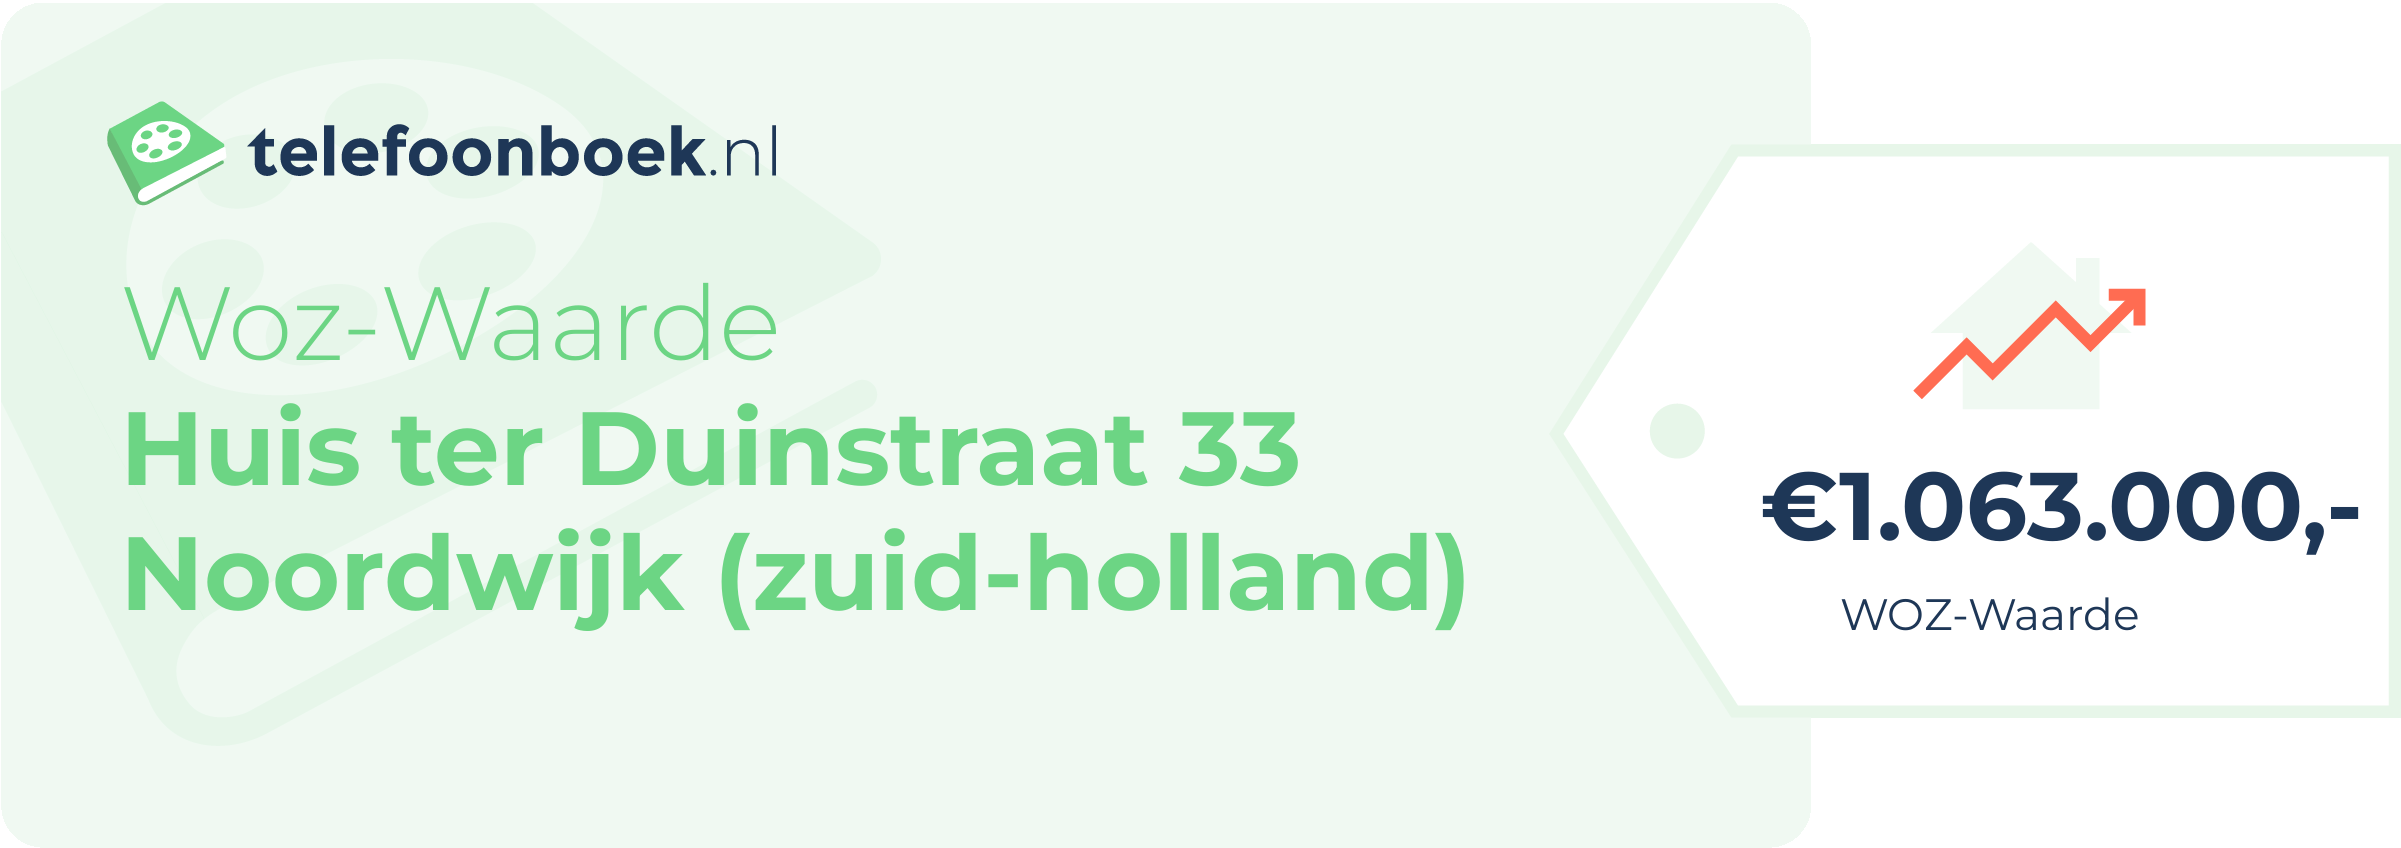 WOZ-waarde Huis Ter Duinstraat 33 Noordwijk (Zuid-Holland)